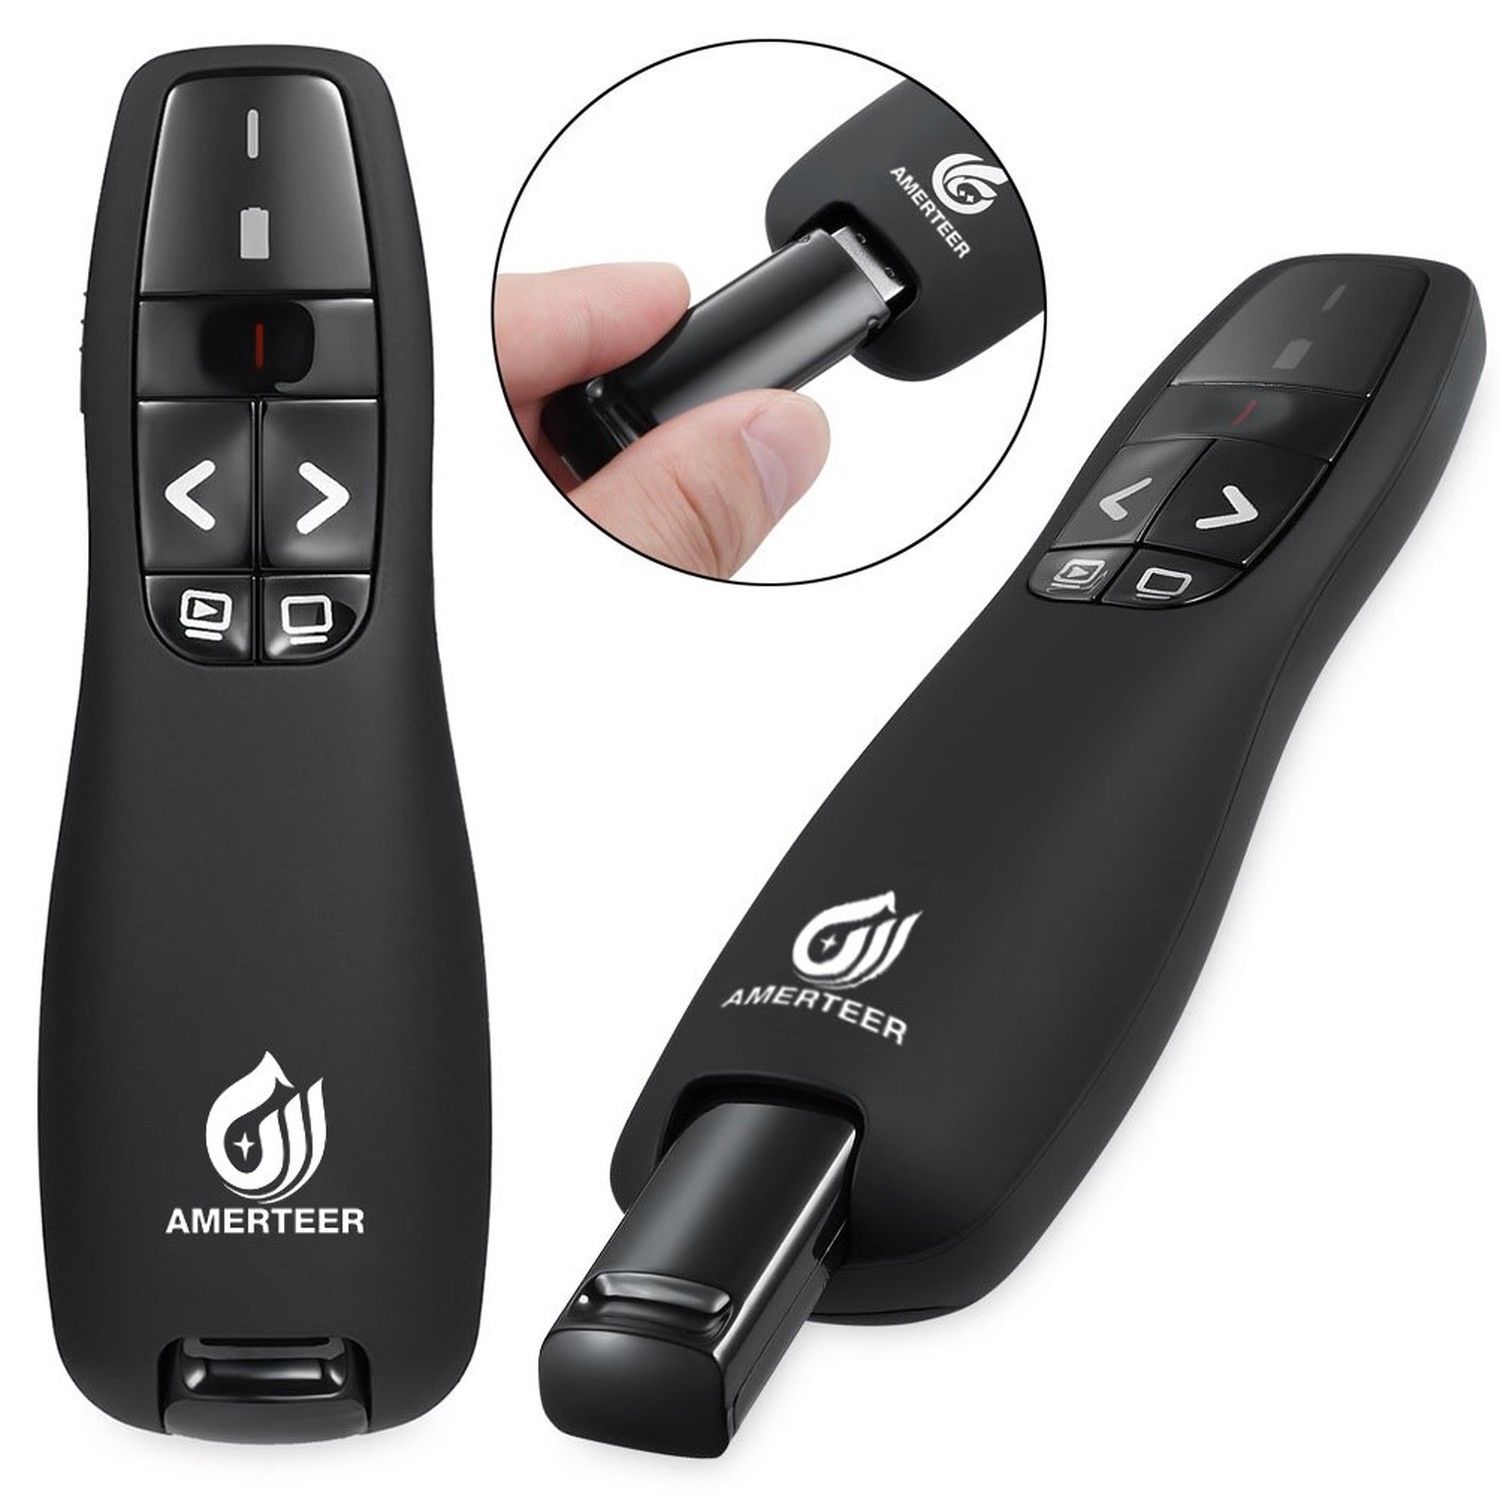 AMERTEER RF 2.4GHz Wireless USB PowerPoint PPT Presenter Presentation Remote Control Laser Pointer Clicker Flip Pen